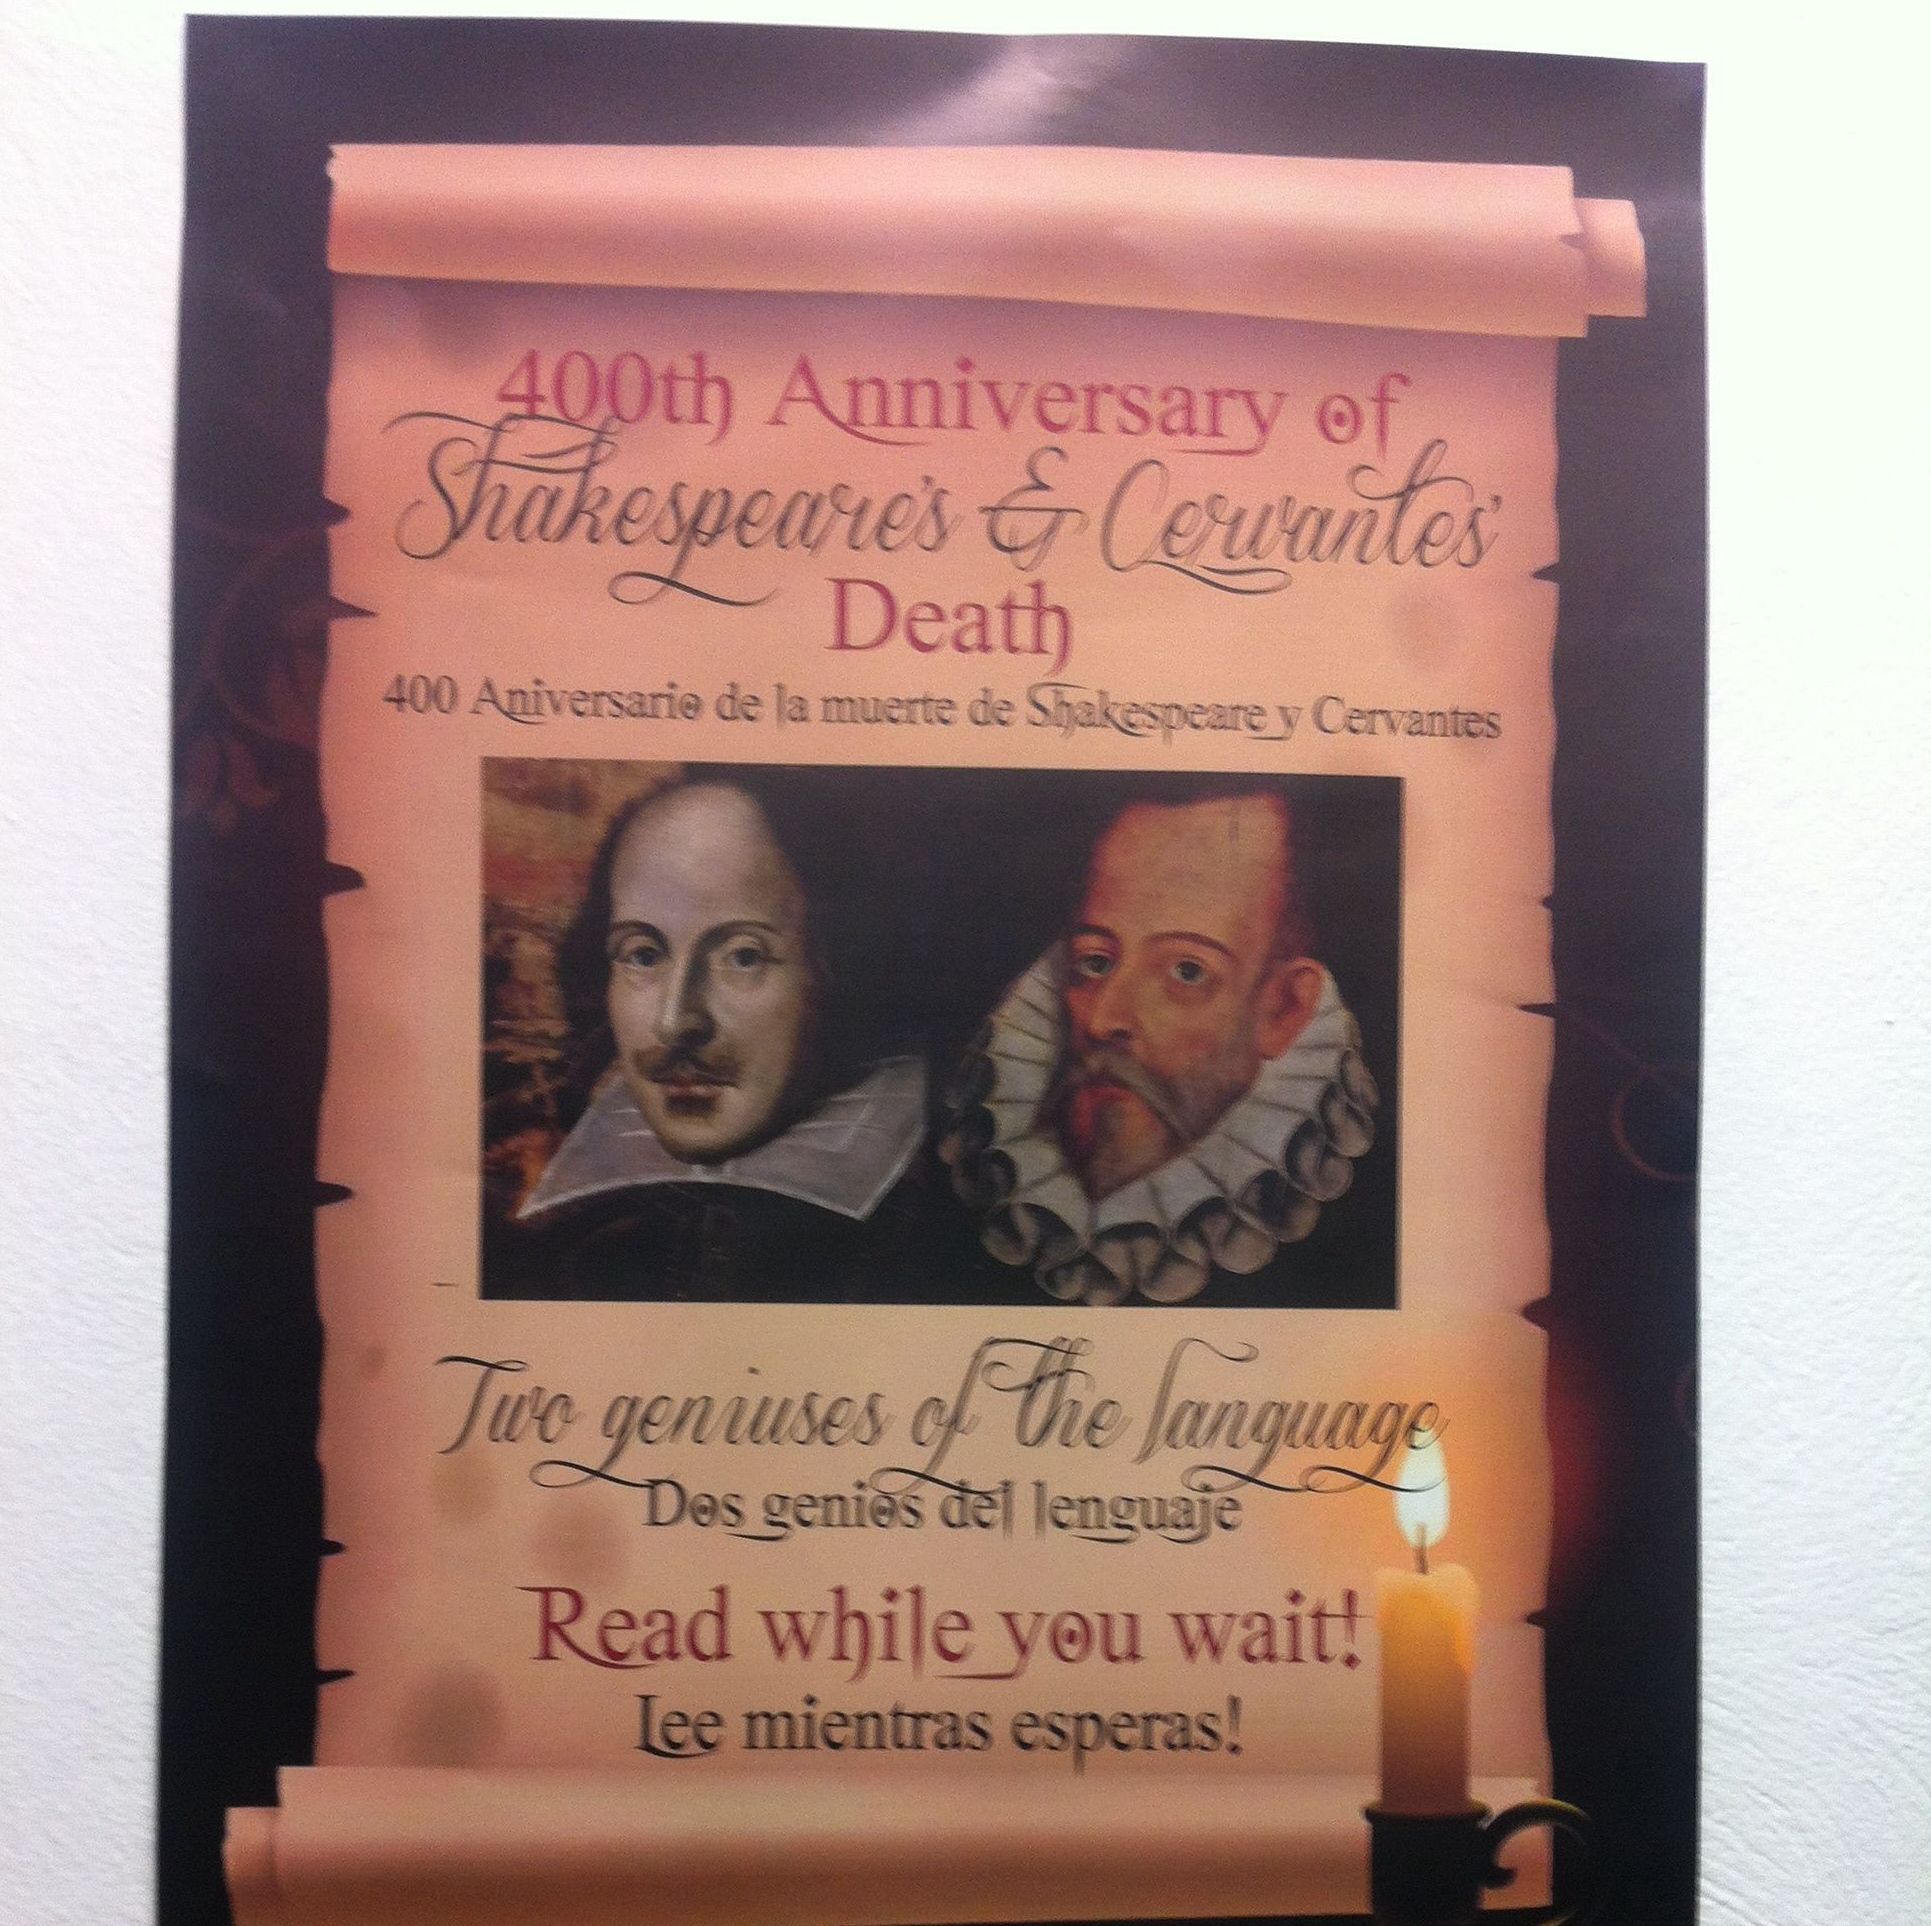 Nuestro rinconcito en homenaje a dos genios del lenguaje en el 400 aniversario de su muerte